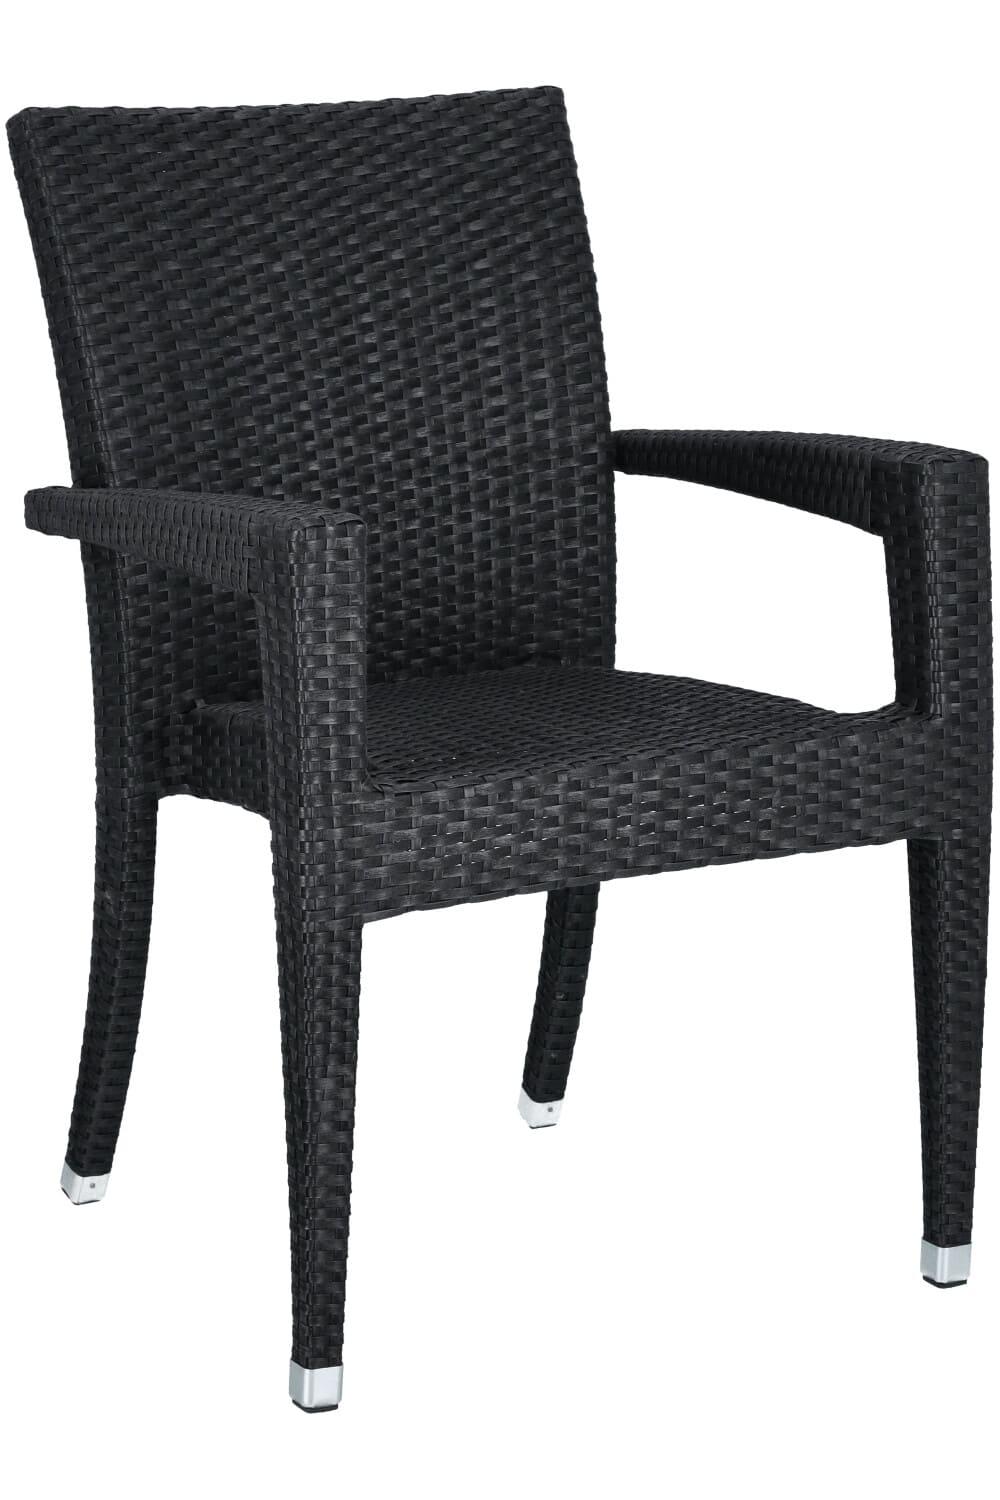 Abbildung arm chair Oria Schrägansicht